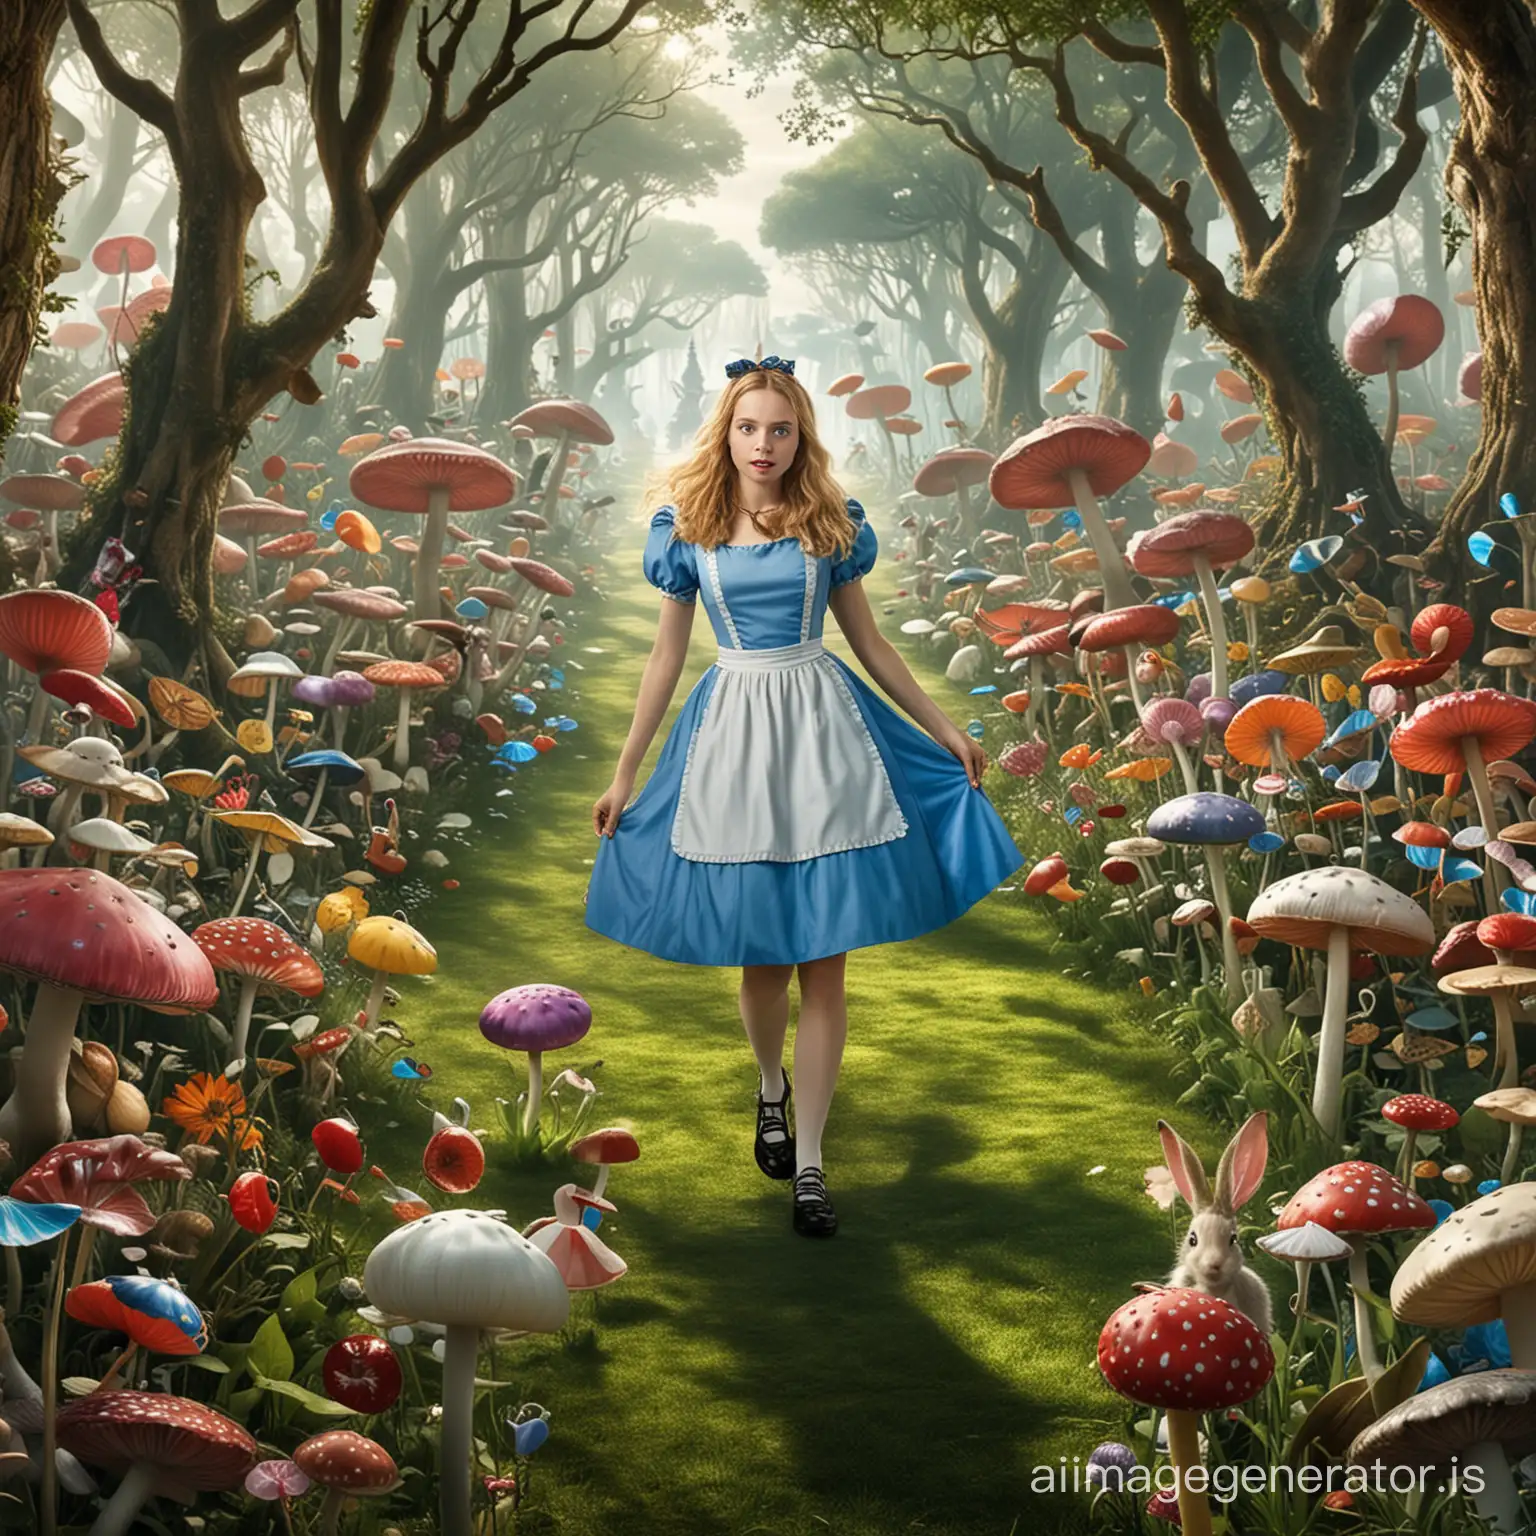 Alice in wonderland in wonderland